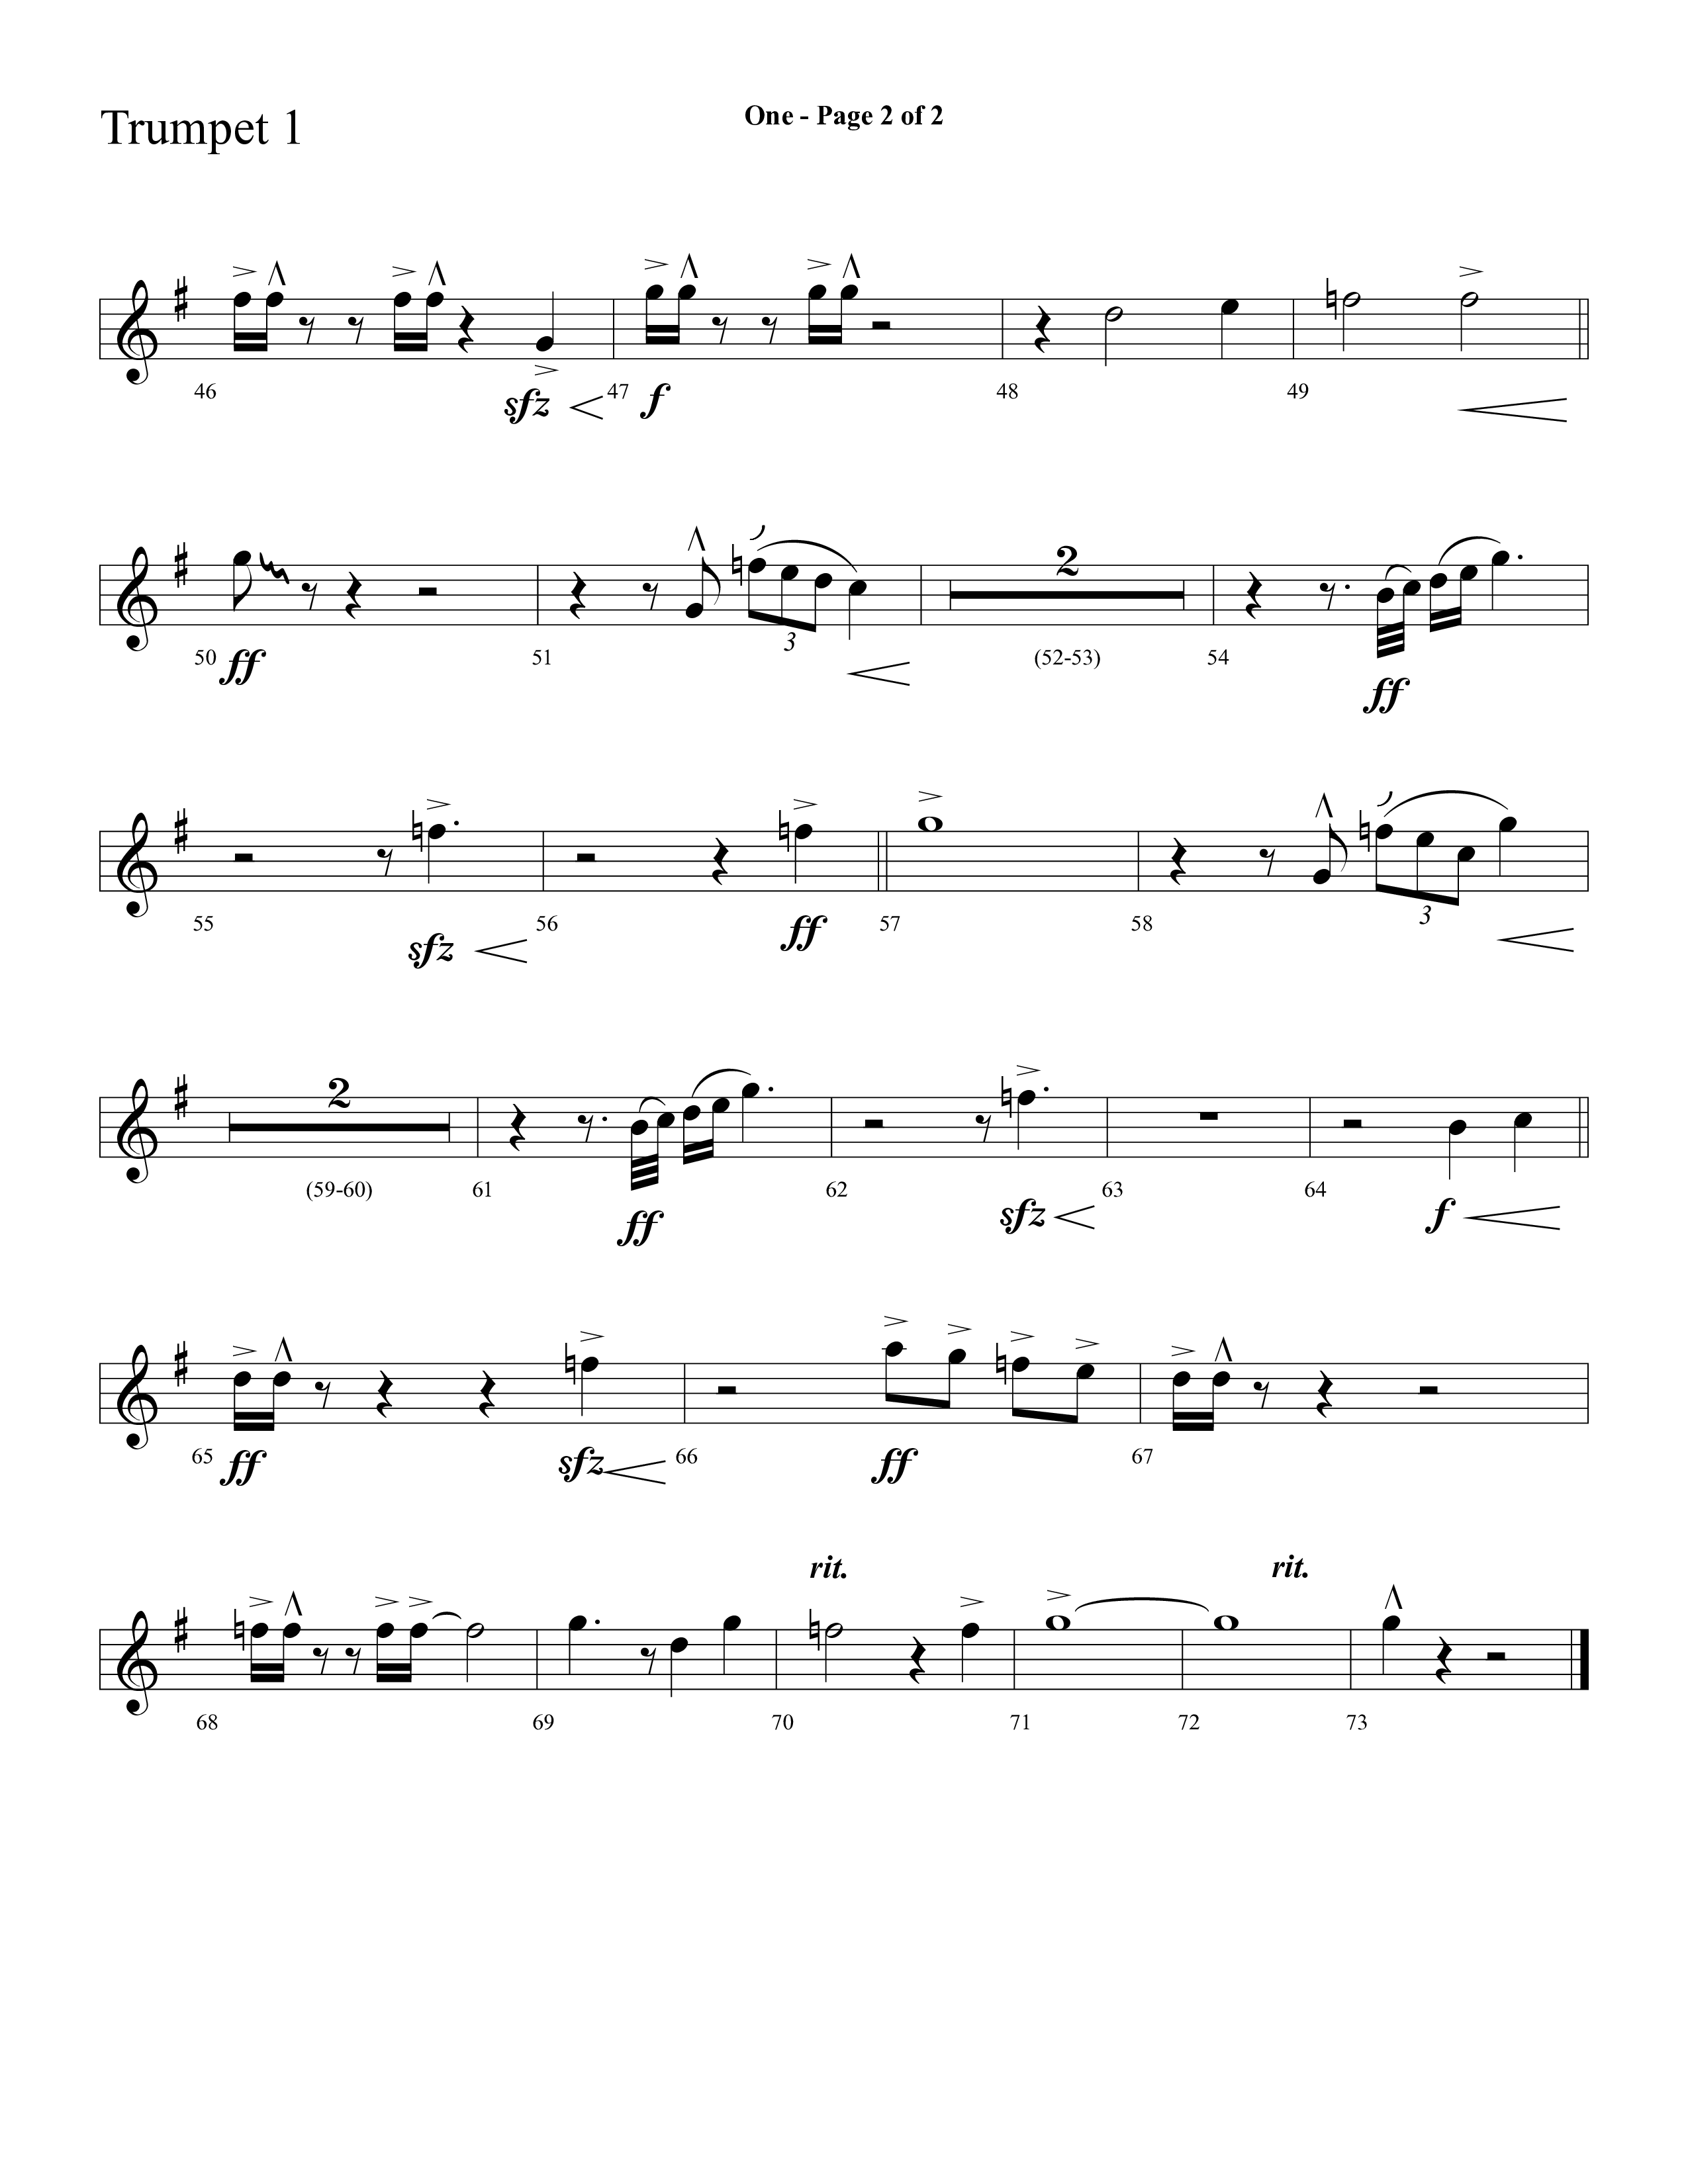 One (Choral Anthem SATB) Trumpet 1 (Lifeway Choral)